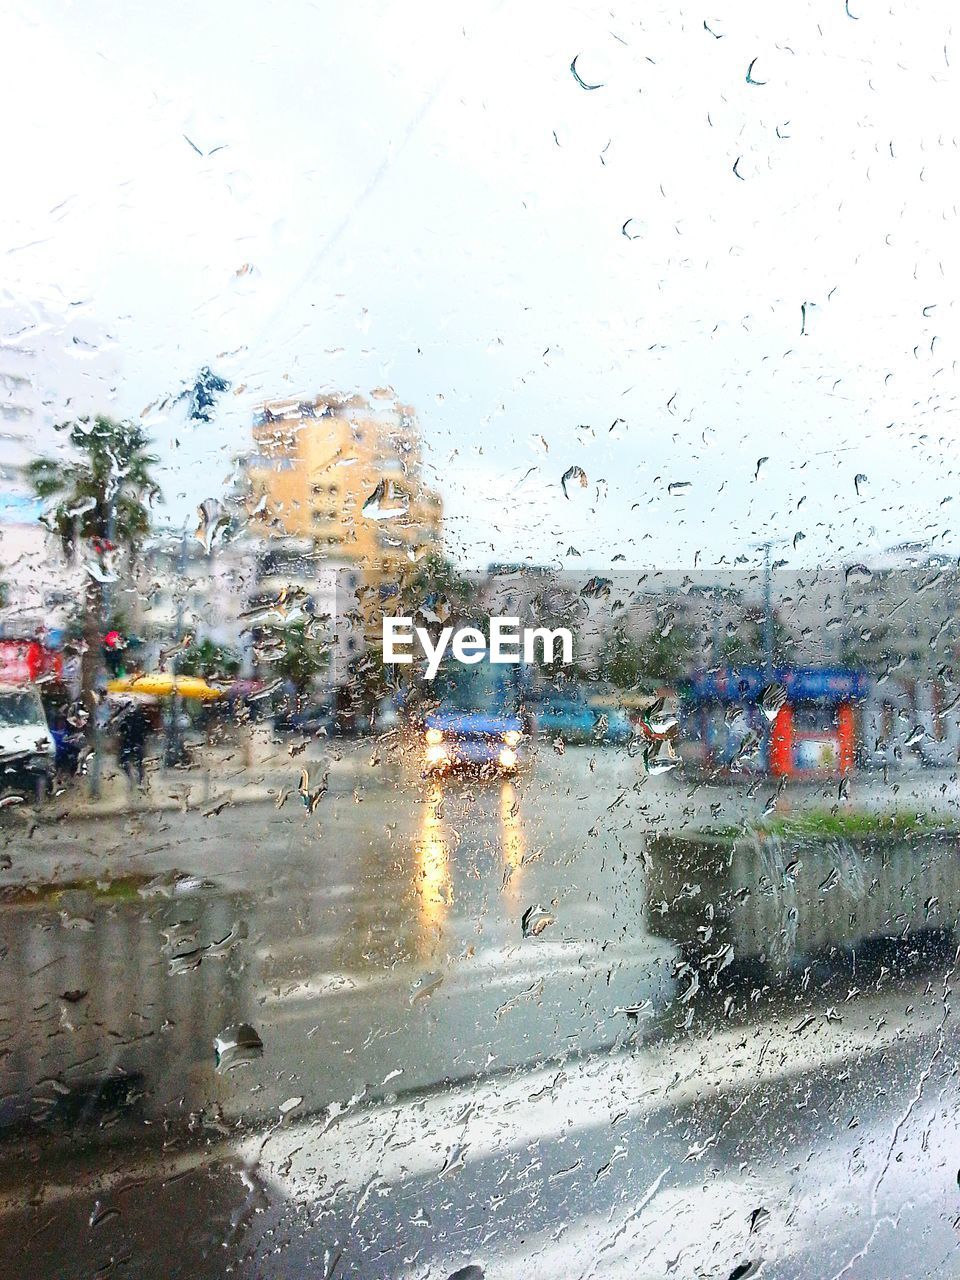 City street seen through wet window